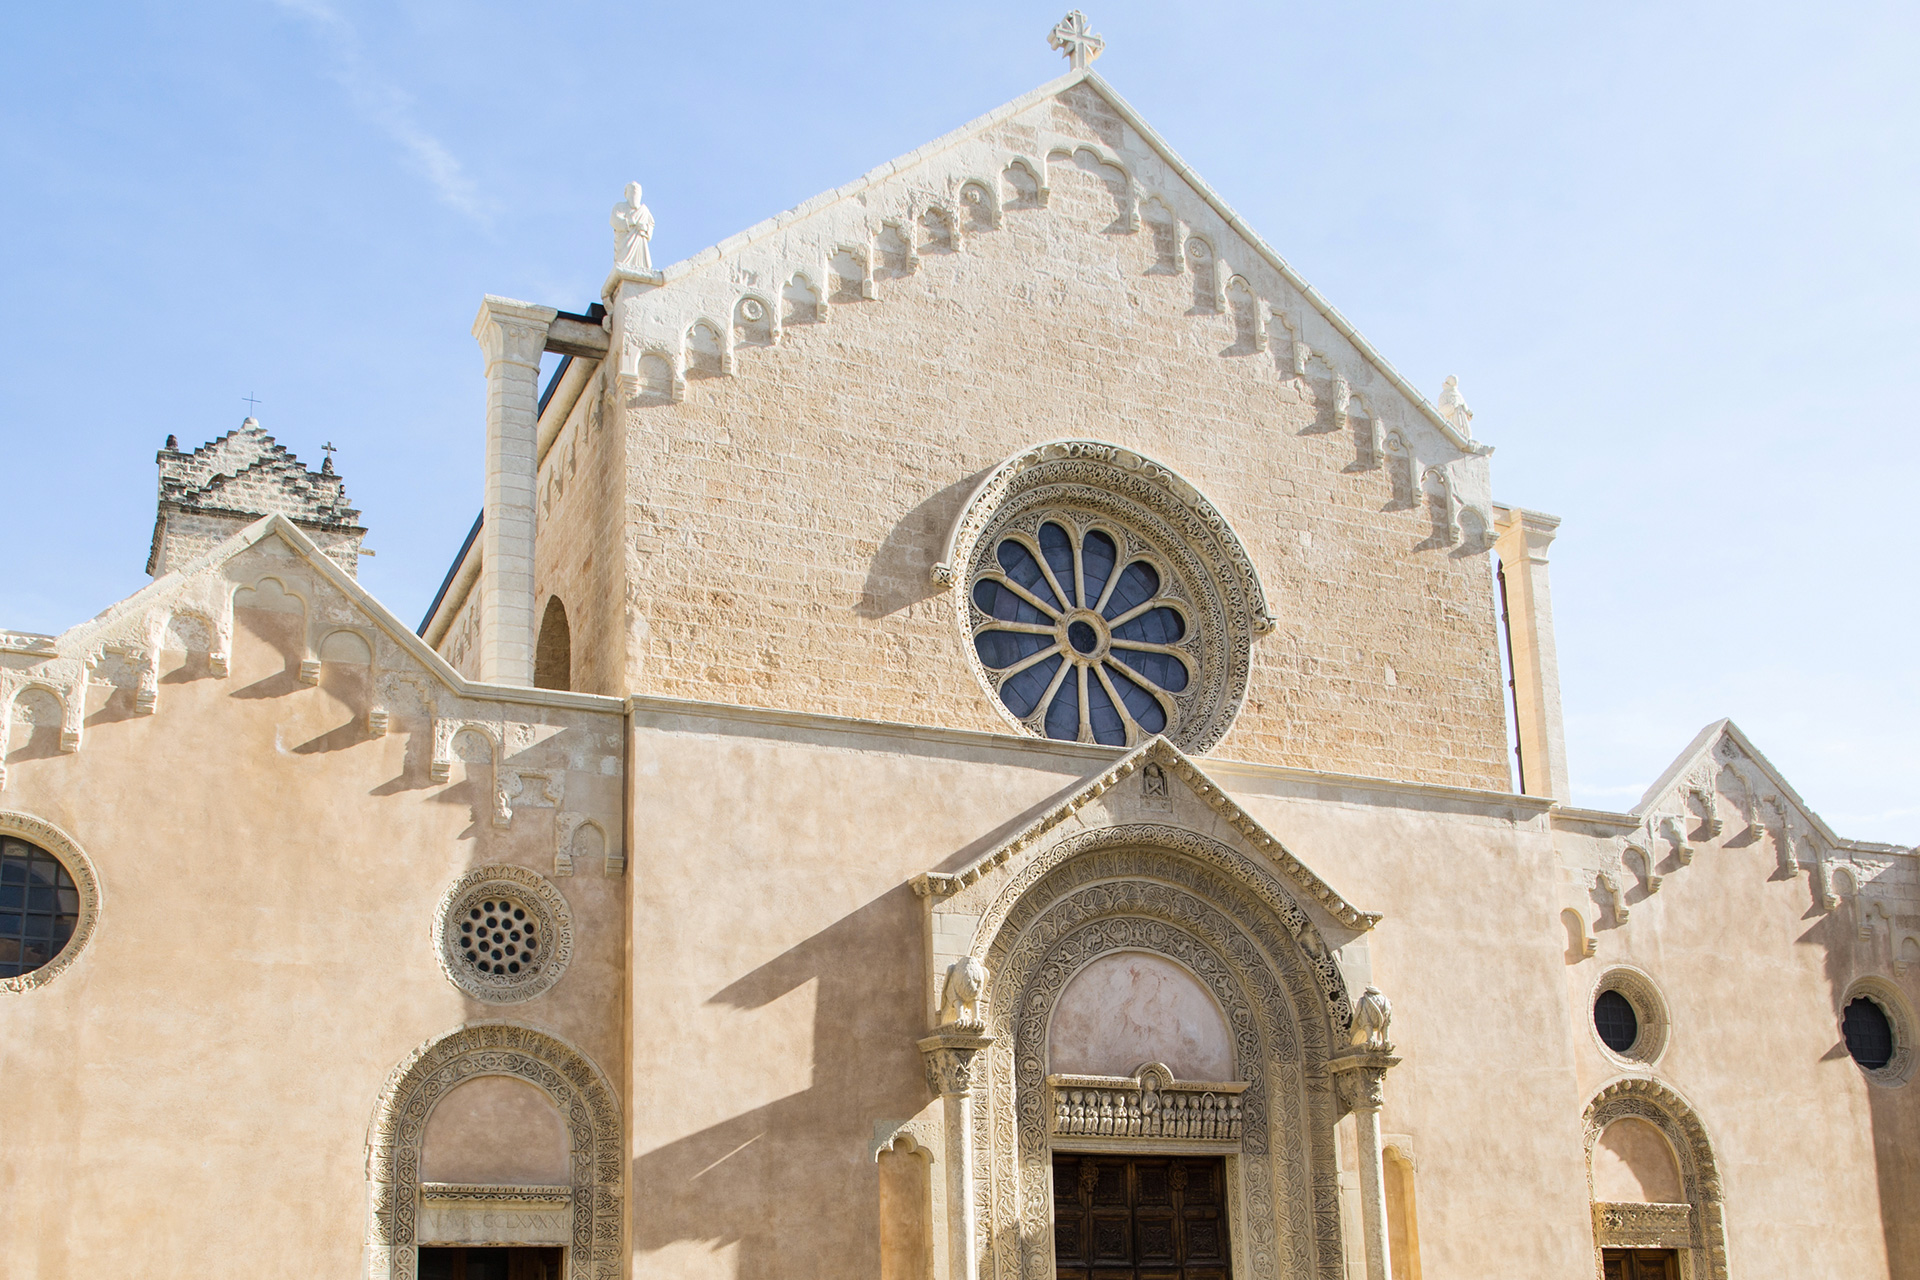 Basilica Santa Caterina Galatina